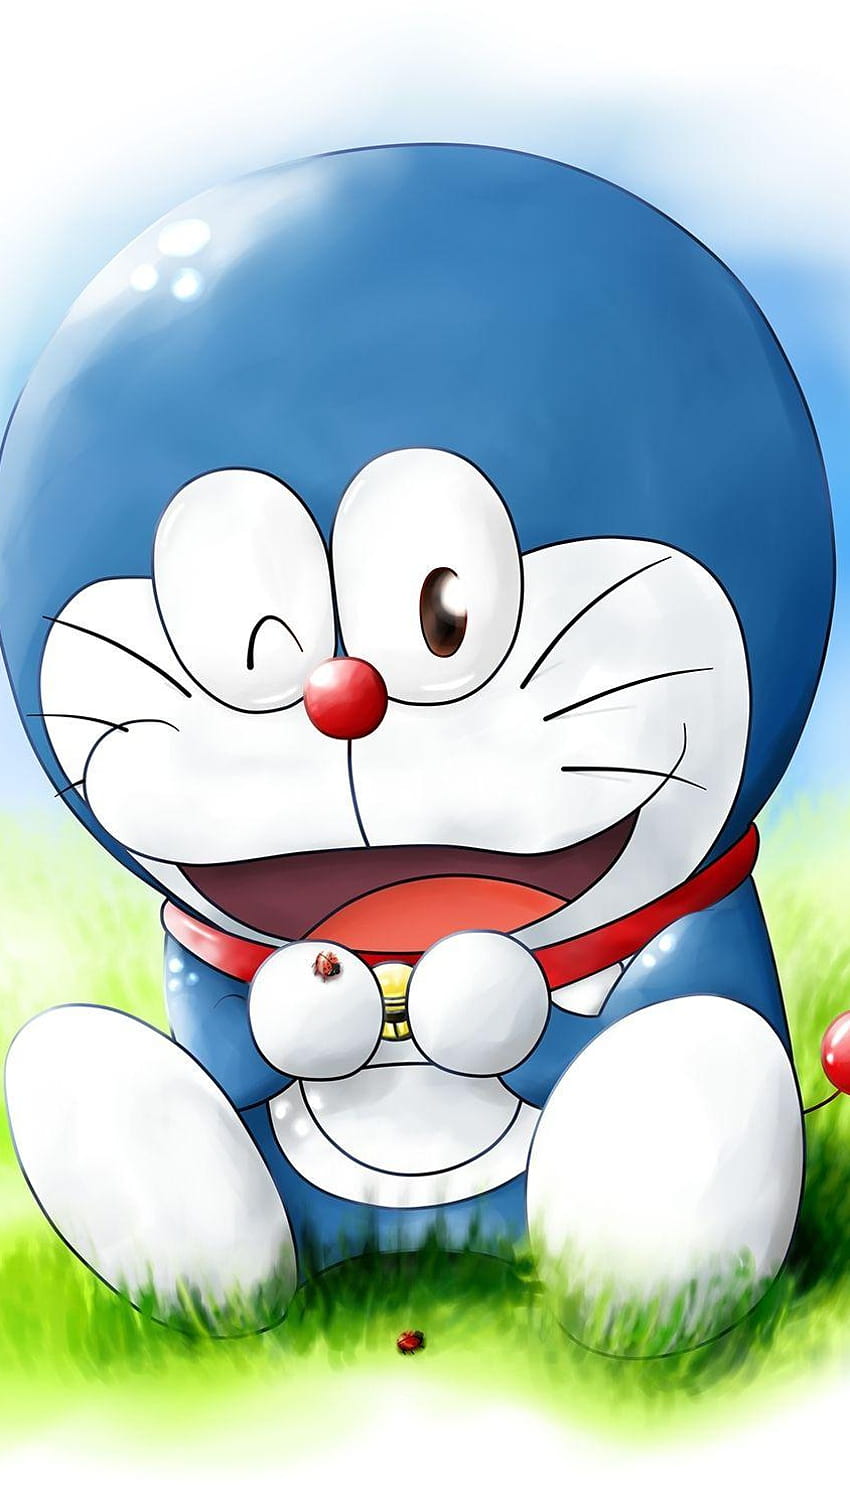 Bạn đã từng thử chơi game Doraemon? Hôm nay chúng ta sẽ cùng đến thế giới ảo của Doraemon thông qua ảnh về trò chơi này. Các nhân vật trong game sẽ đưa bạn đến những chuyến phiêu lưu đầy thú vị.